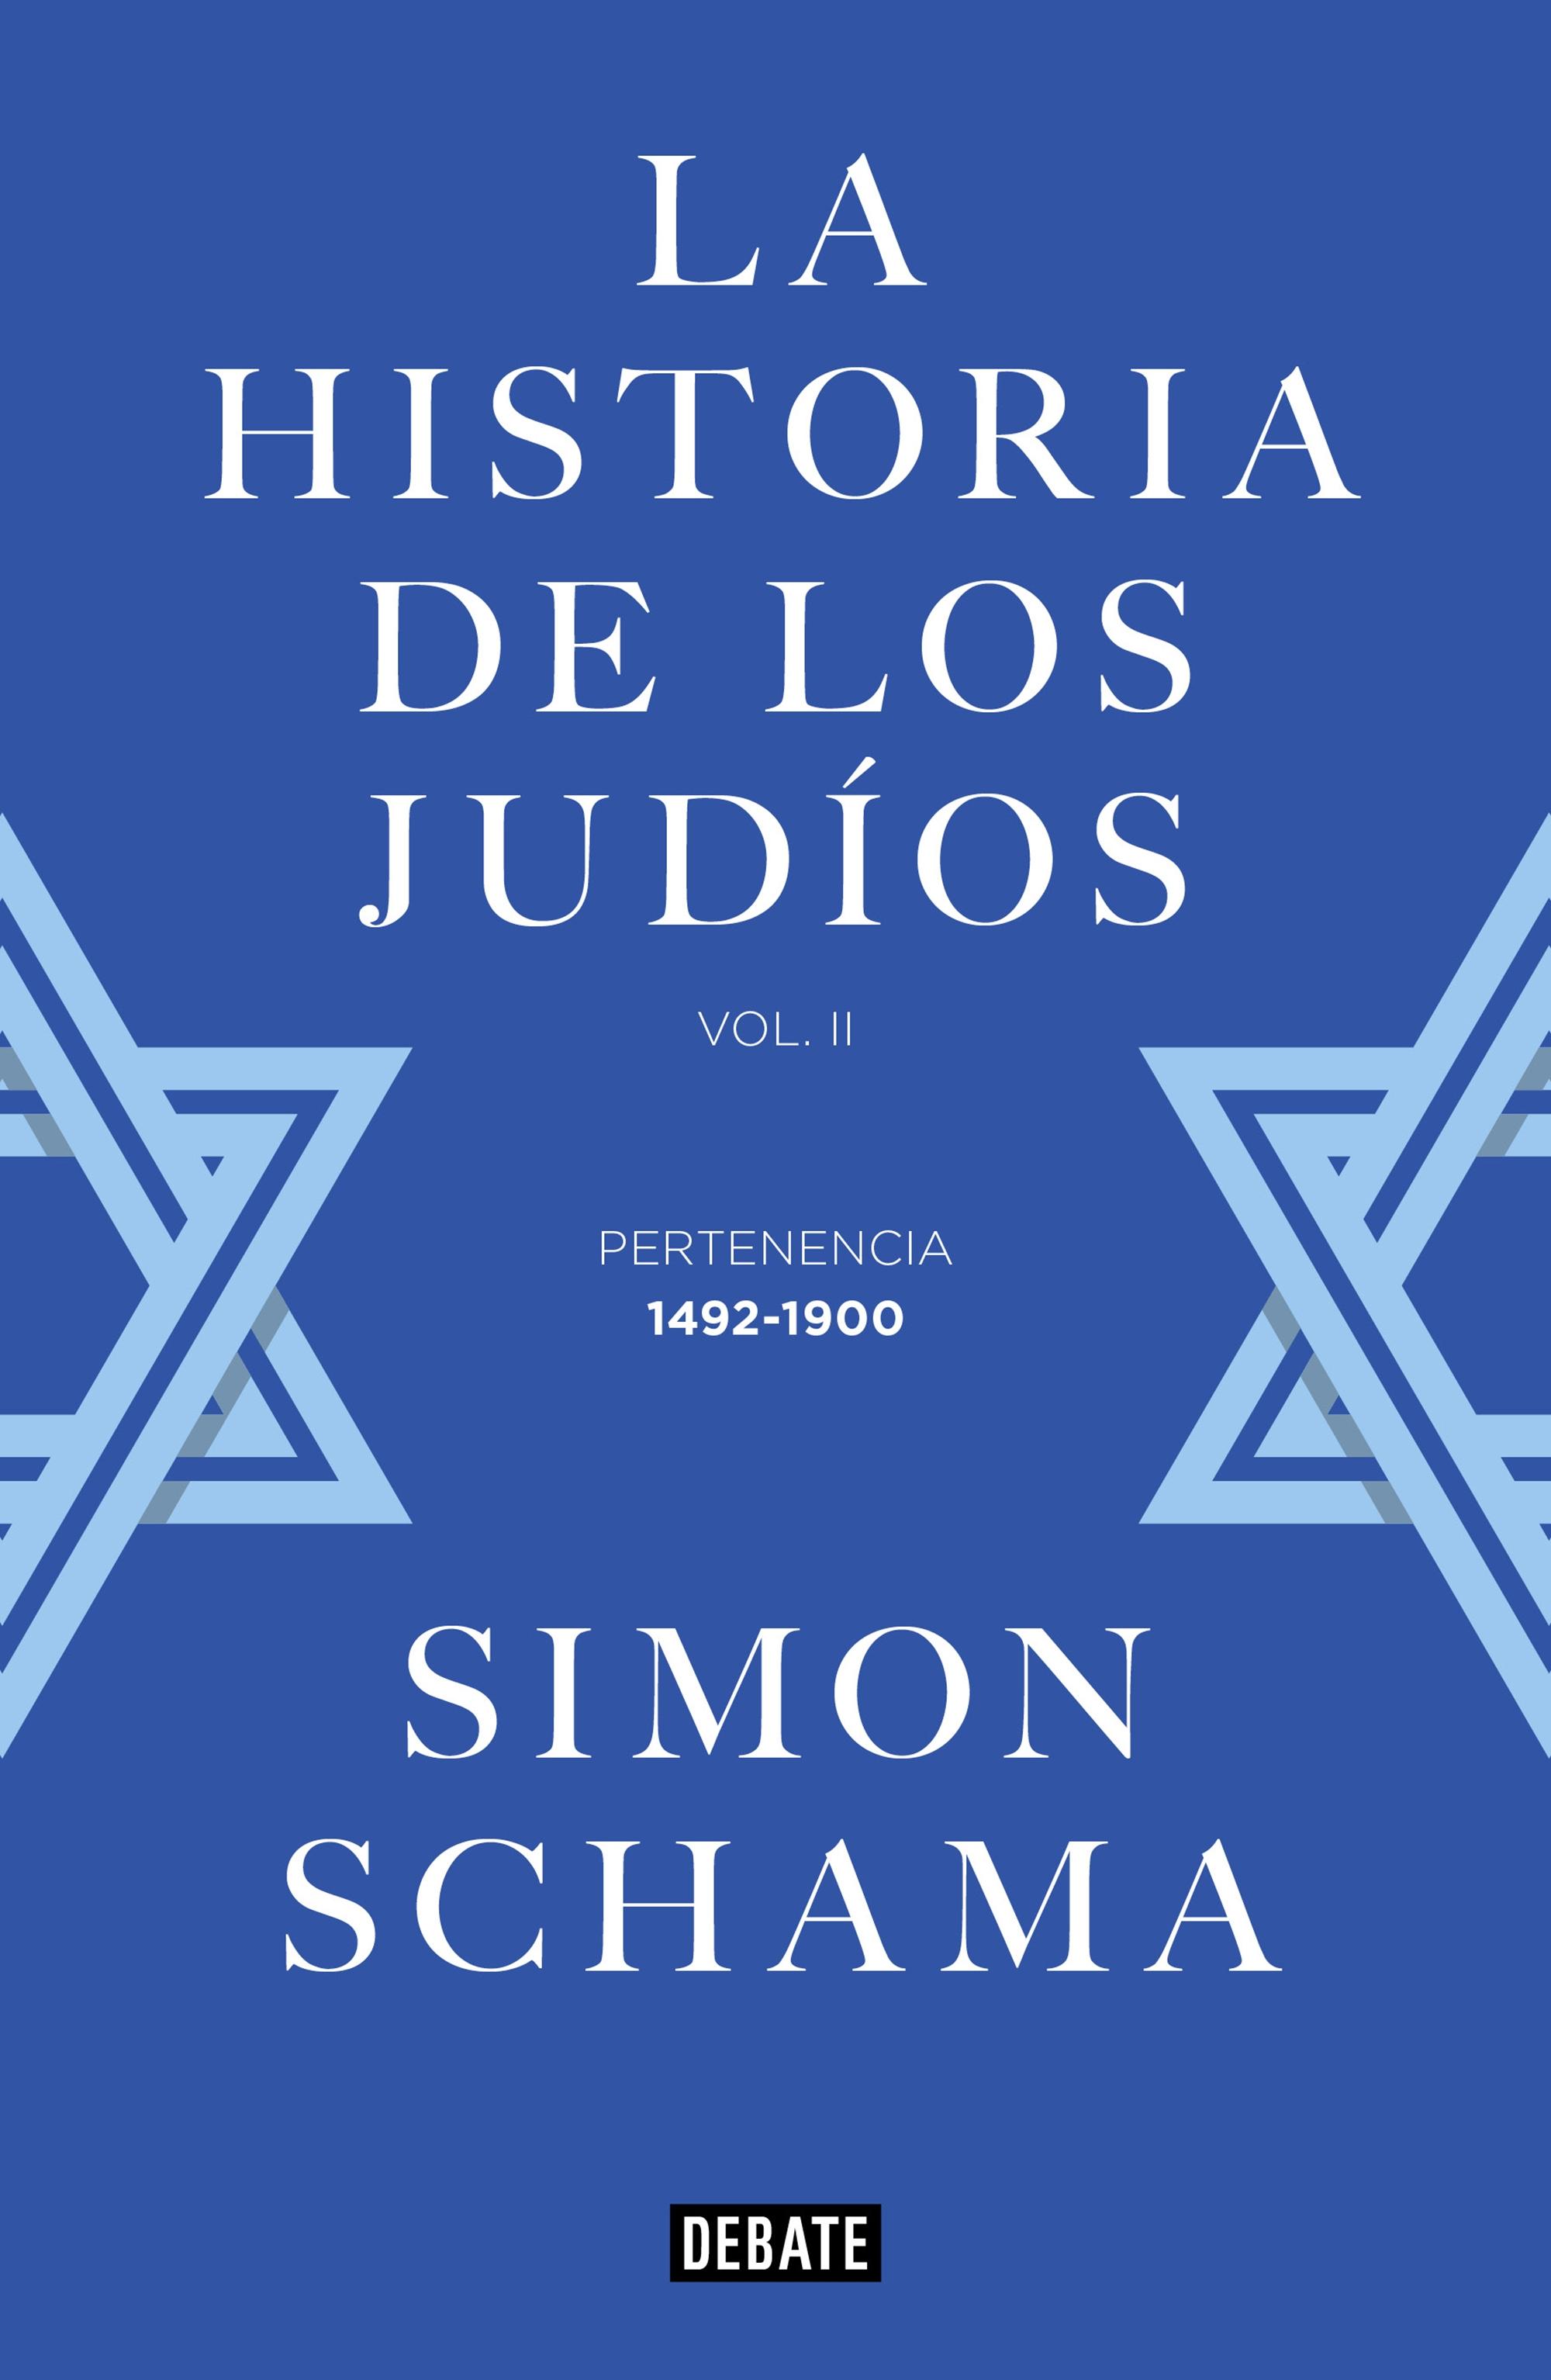 La Historia de los Judíos "Vol. II - Pertenencia, 1492-1900". 